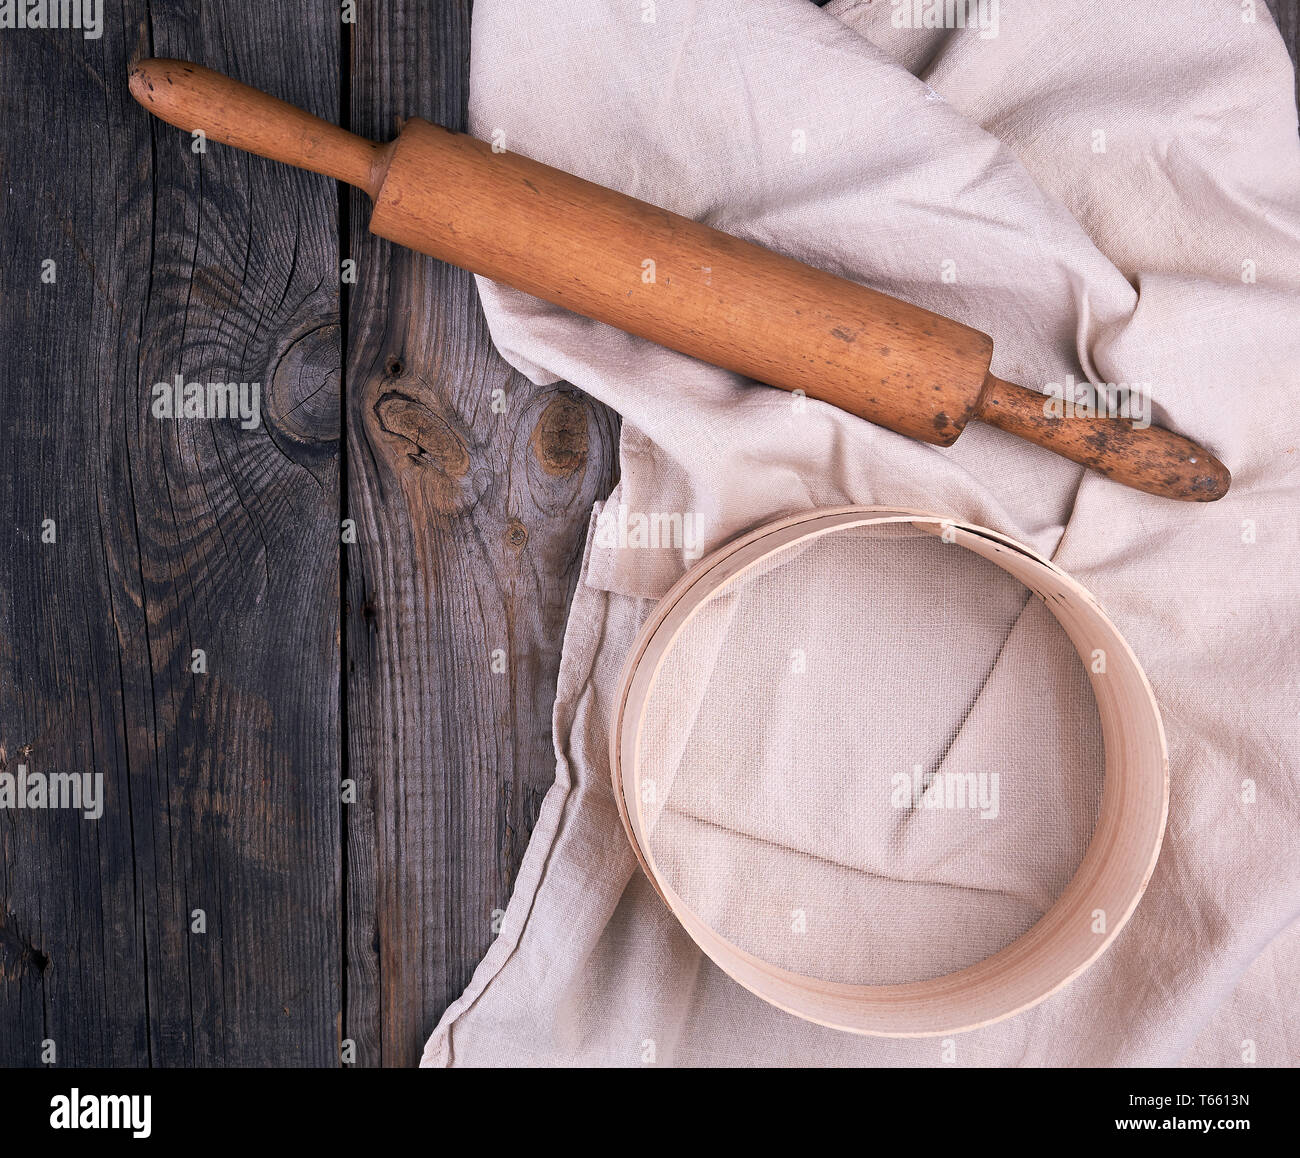 Alte hölzerne Rolling Pin auf ein Textil Serviette mit Stickerei und eine runde Sieb für Mehl, grau Holz- Hintergrund Stockfoto